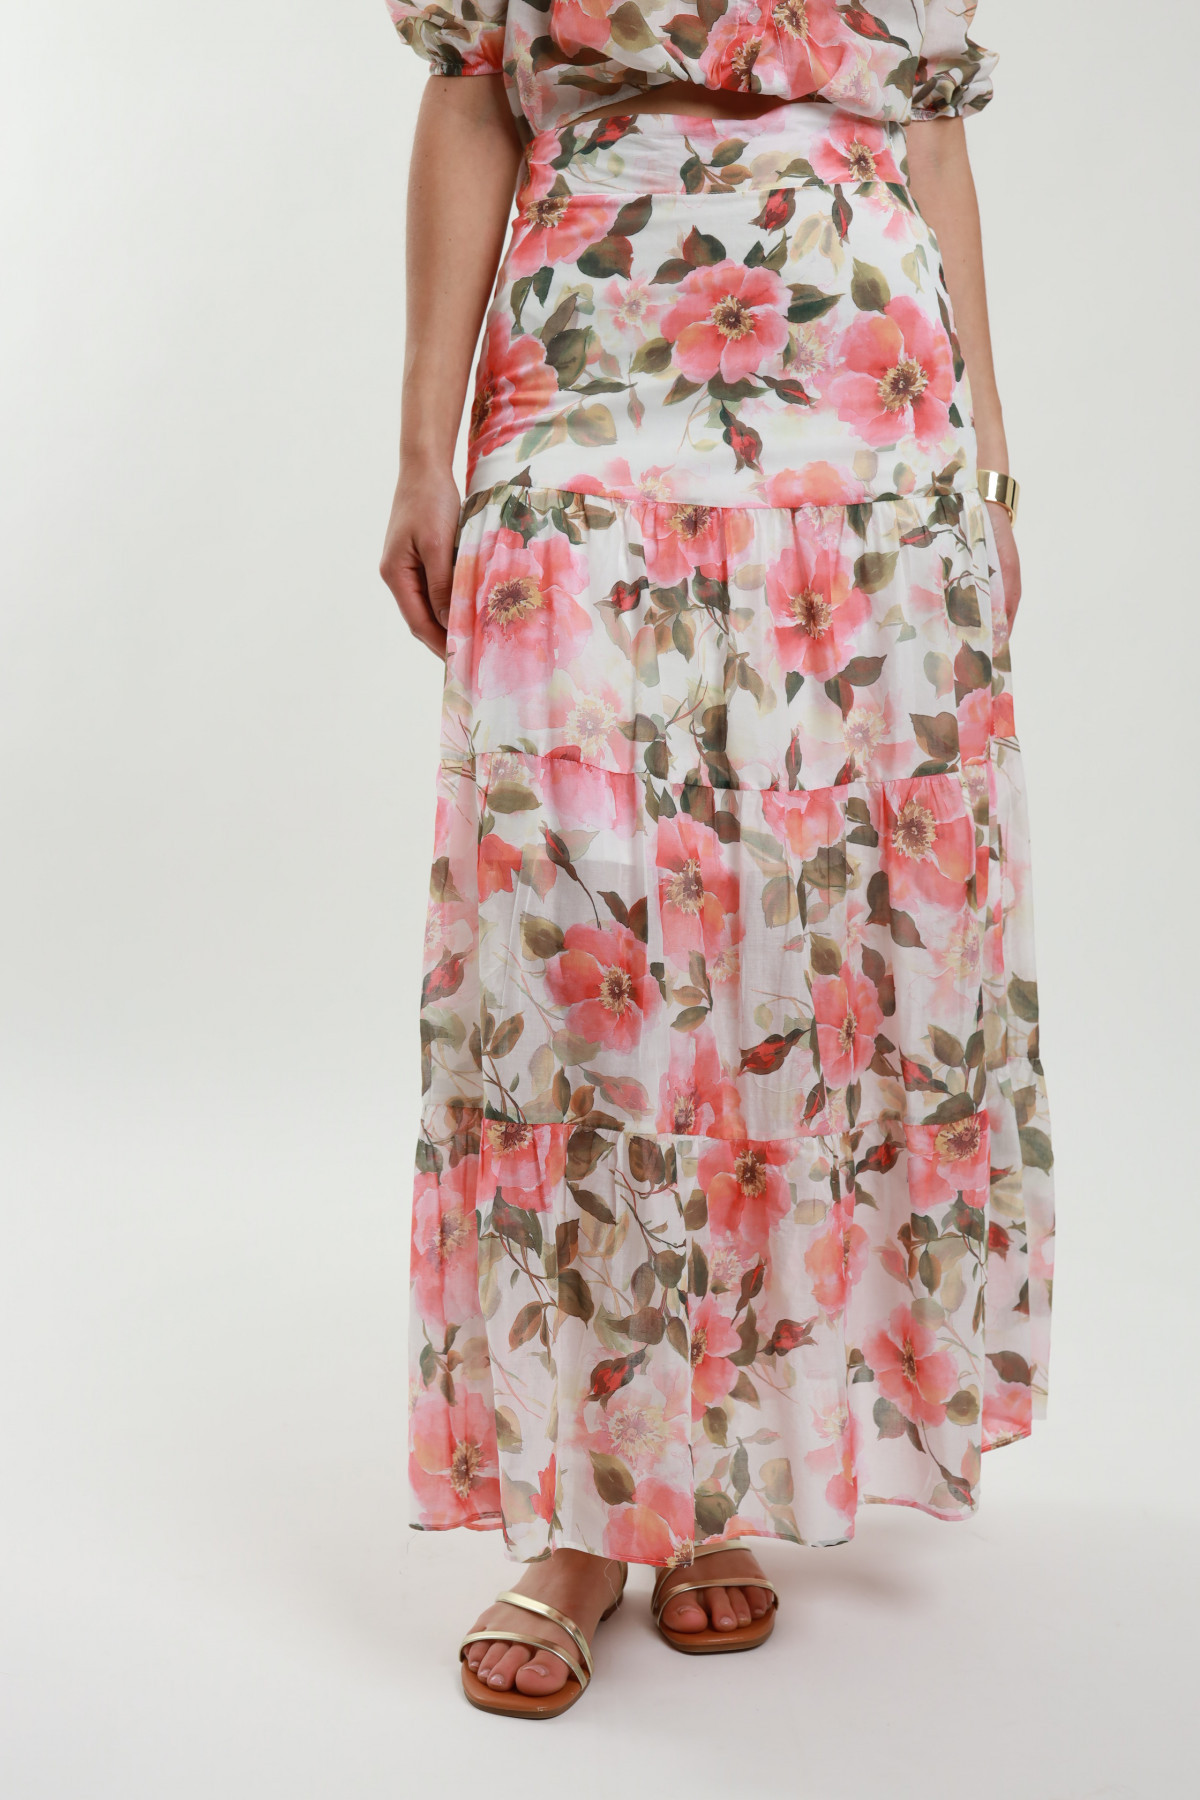 Floral Muslin Skirt